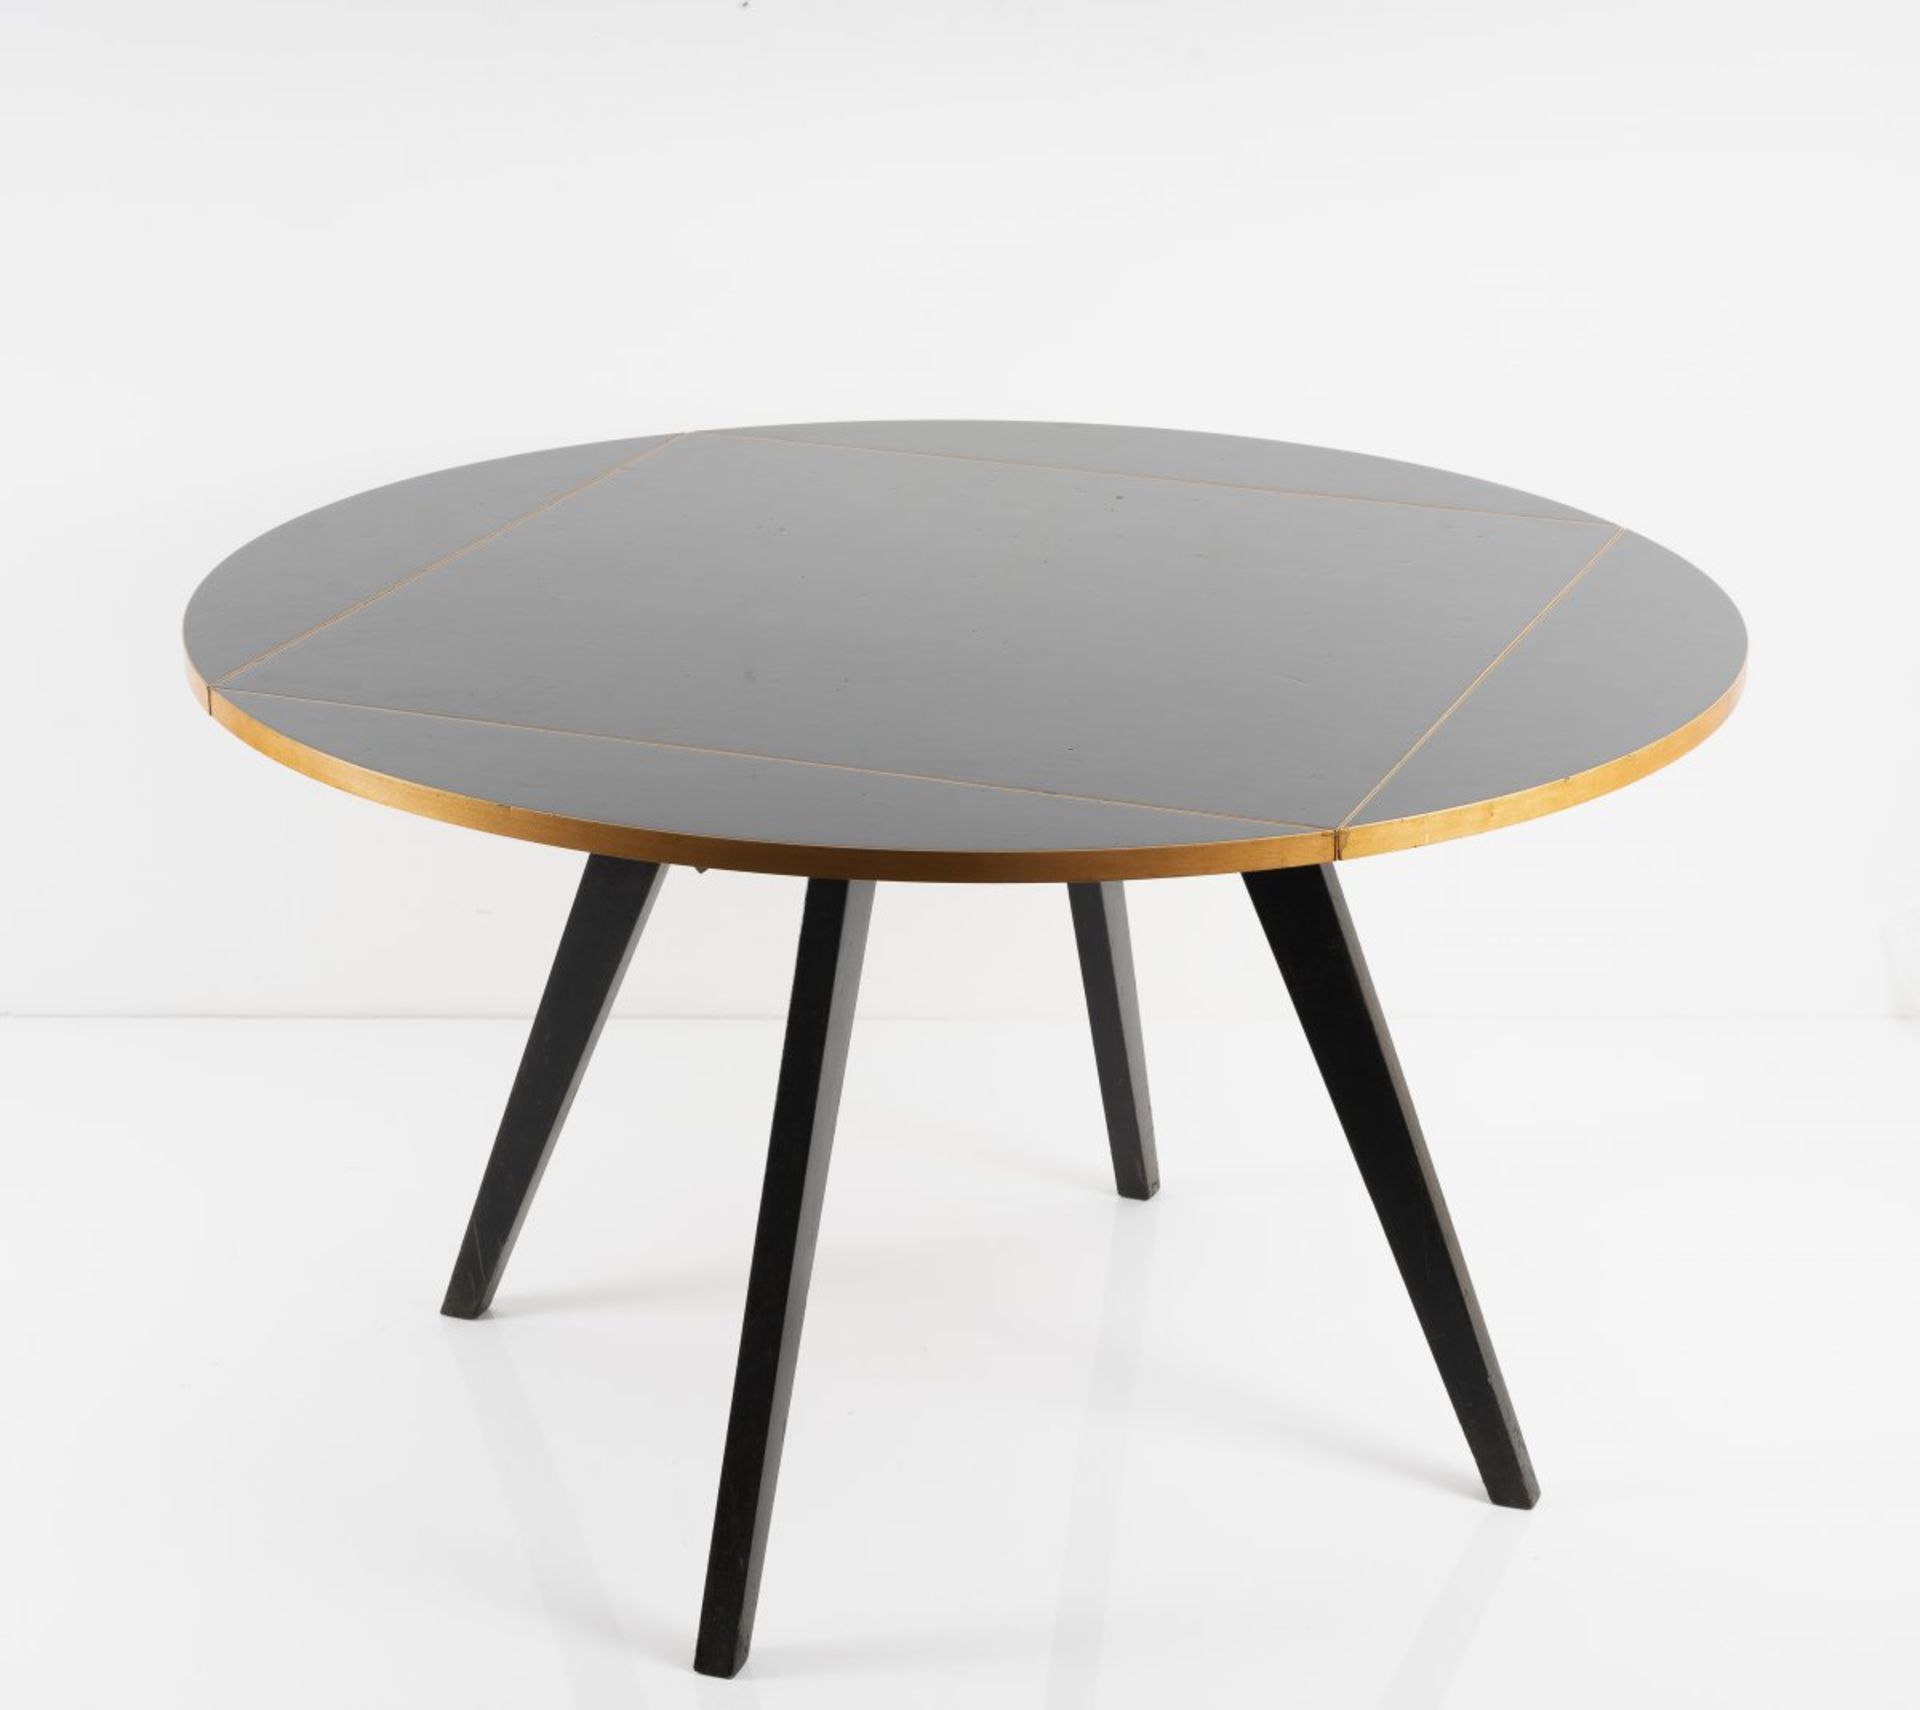 Max Bill, Tisch 'quadratrund', 1949Tisch 'quadratrund', 1949H. 73 x 90 x 90 cm bzw. Ø 127,5 cm. - Bild 6 aus 9